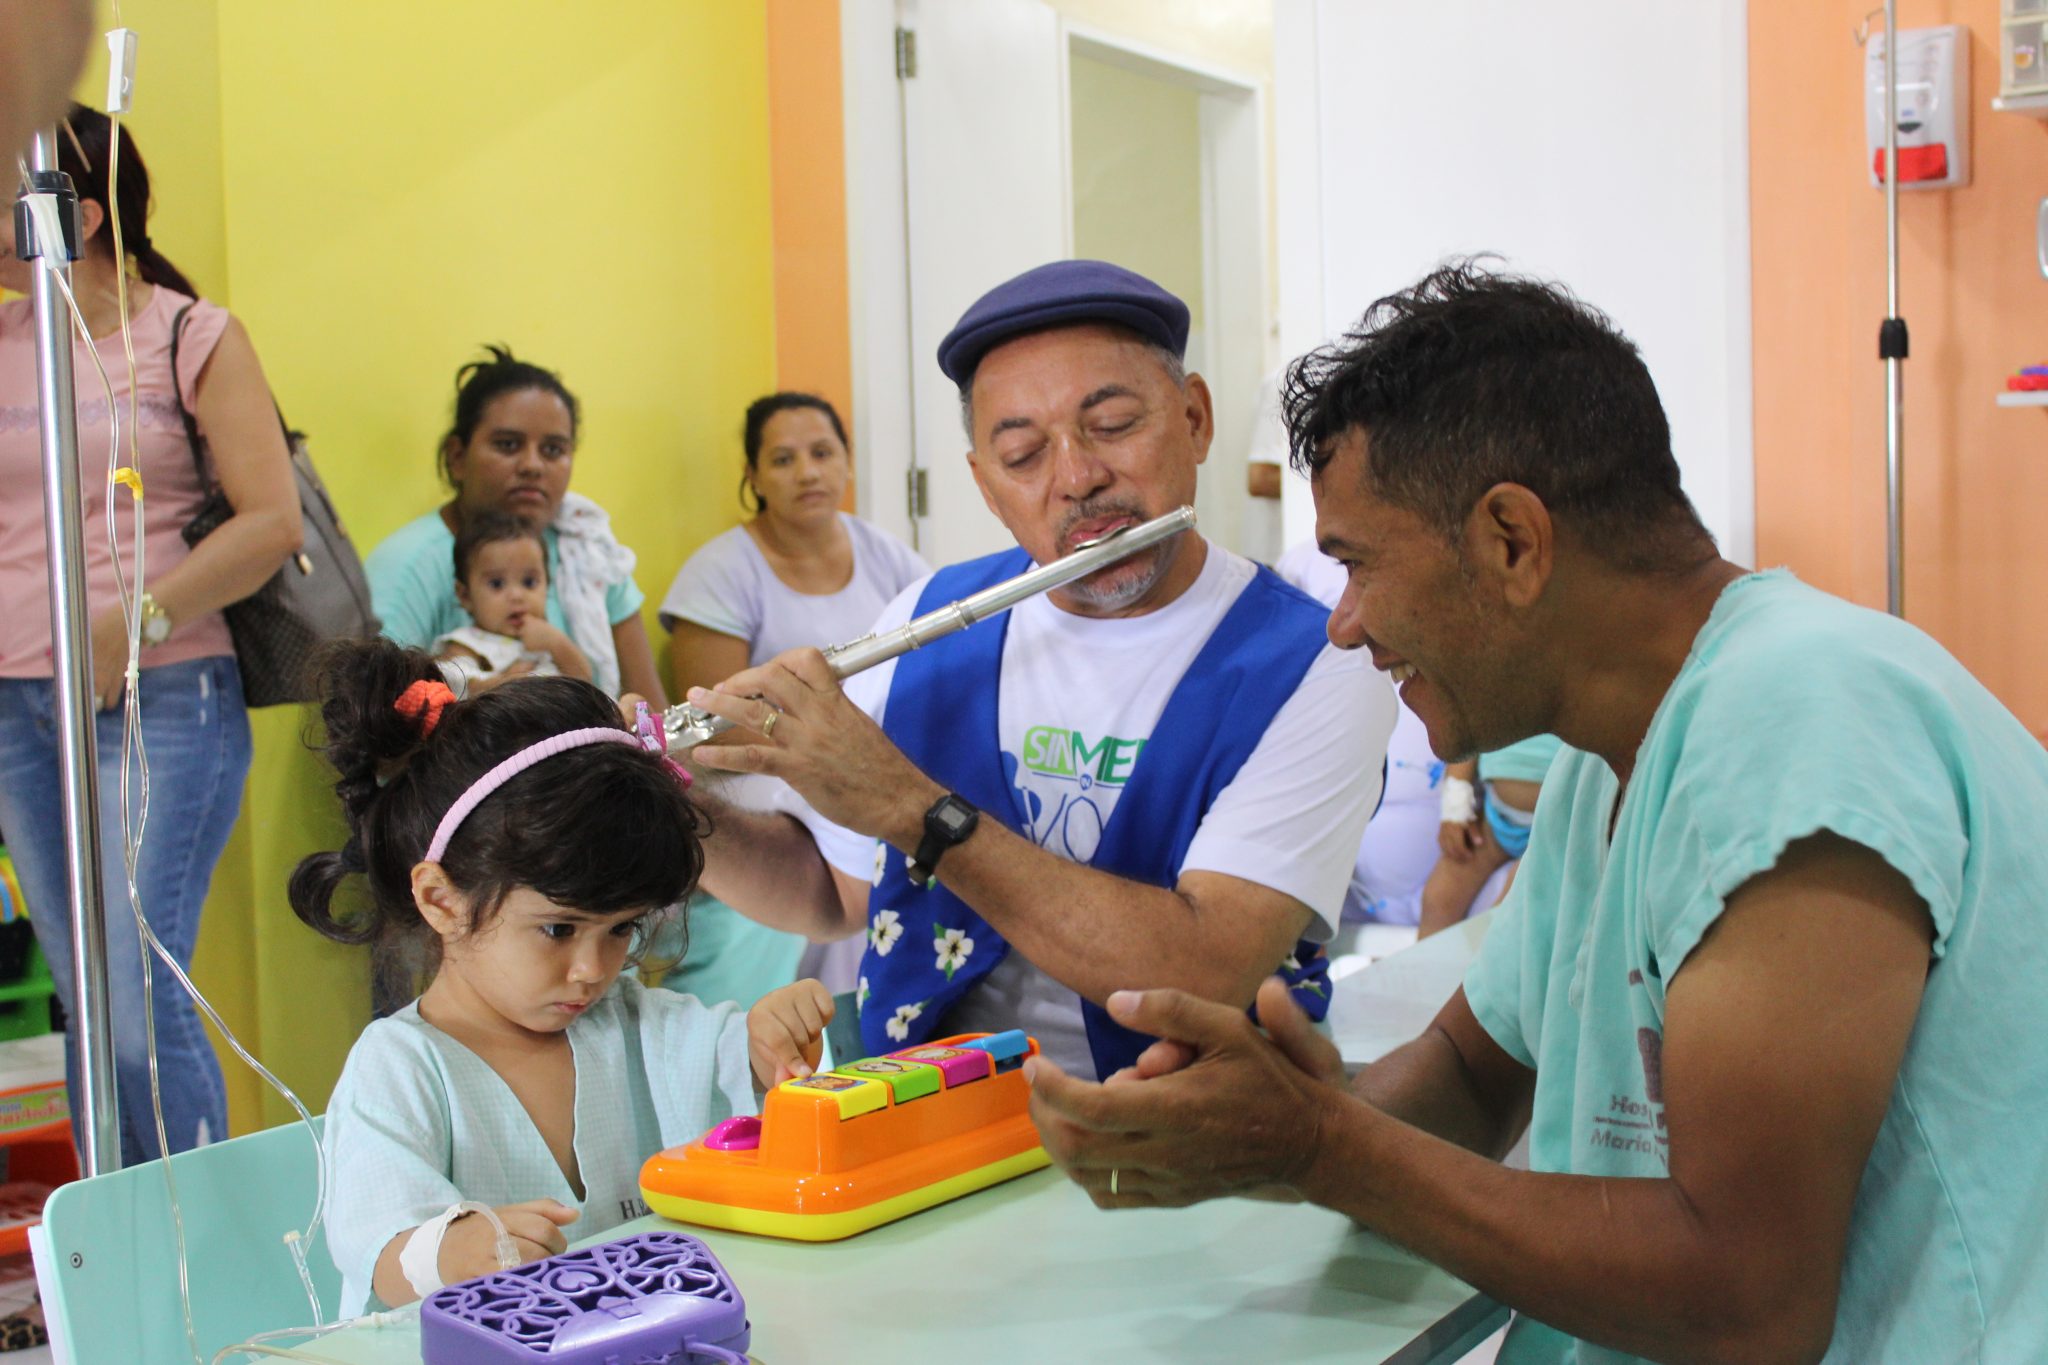 Sinmed visita hospitais de Natal e Região Metropolitana e comemora Dia do Médico com dupla programação nesta sexta